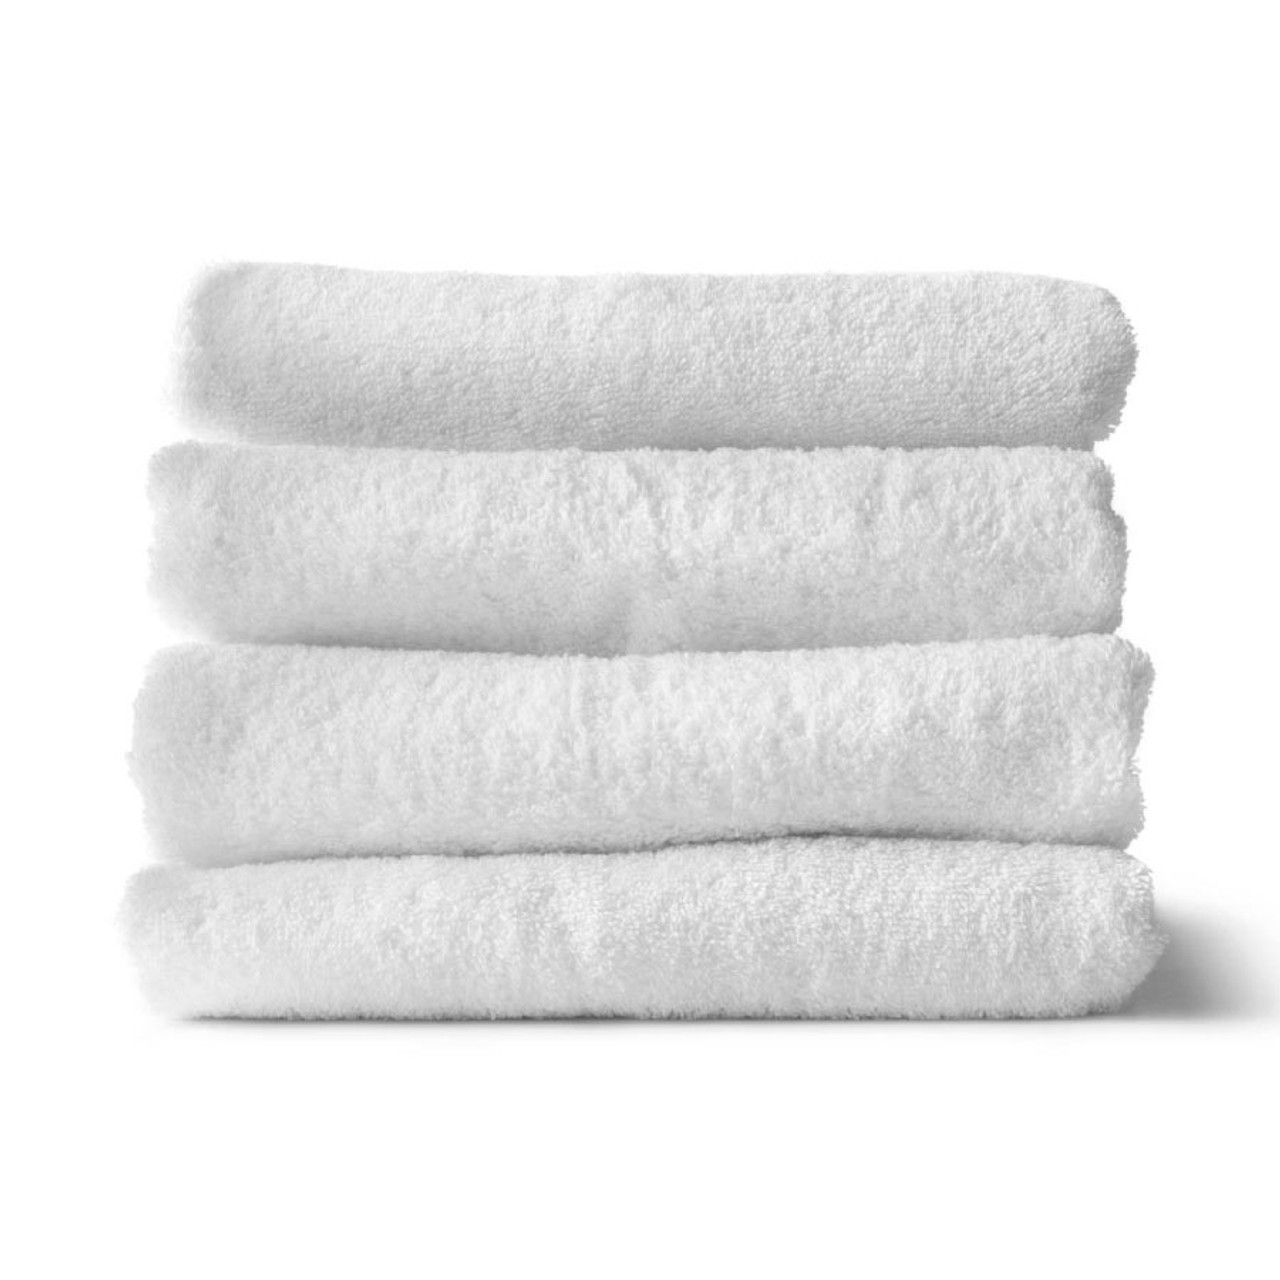 16X30 Wholesale White Gym Towels - Towel Super Center